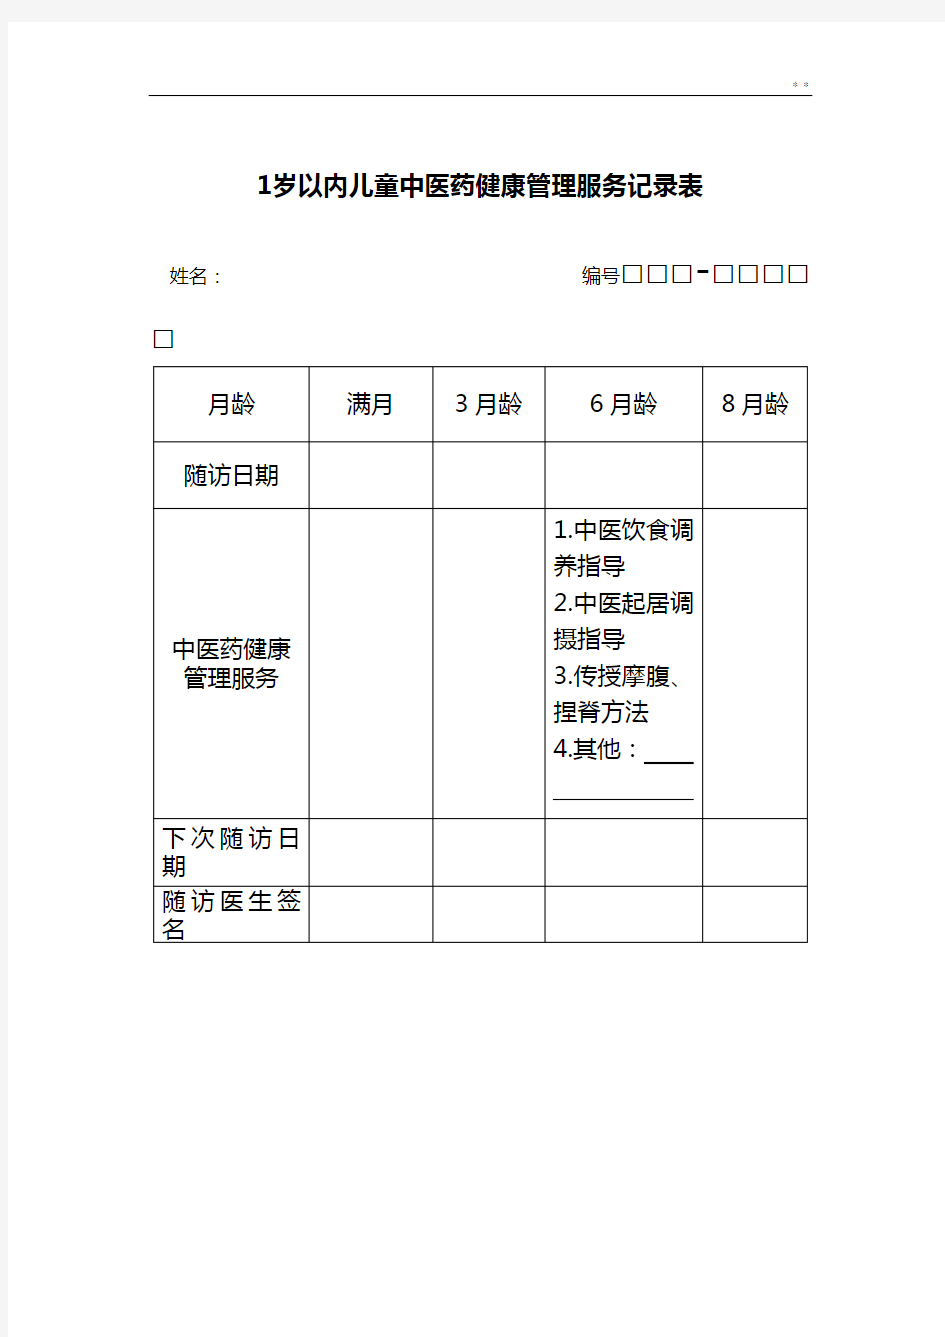 中医健康档案表格(含个案与随访表)